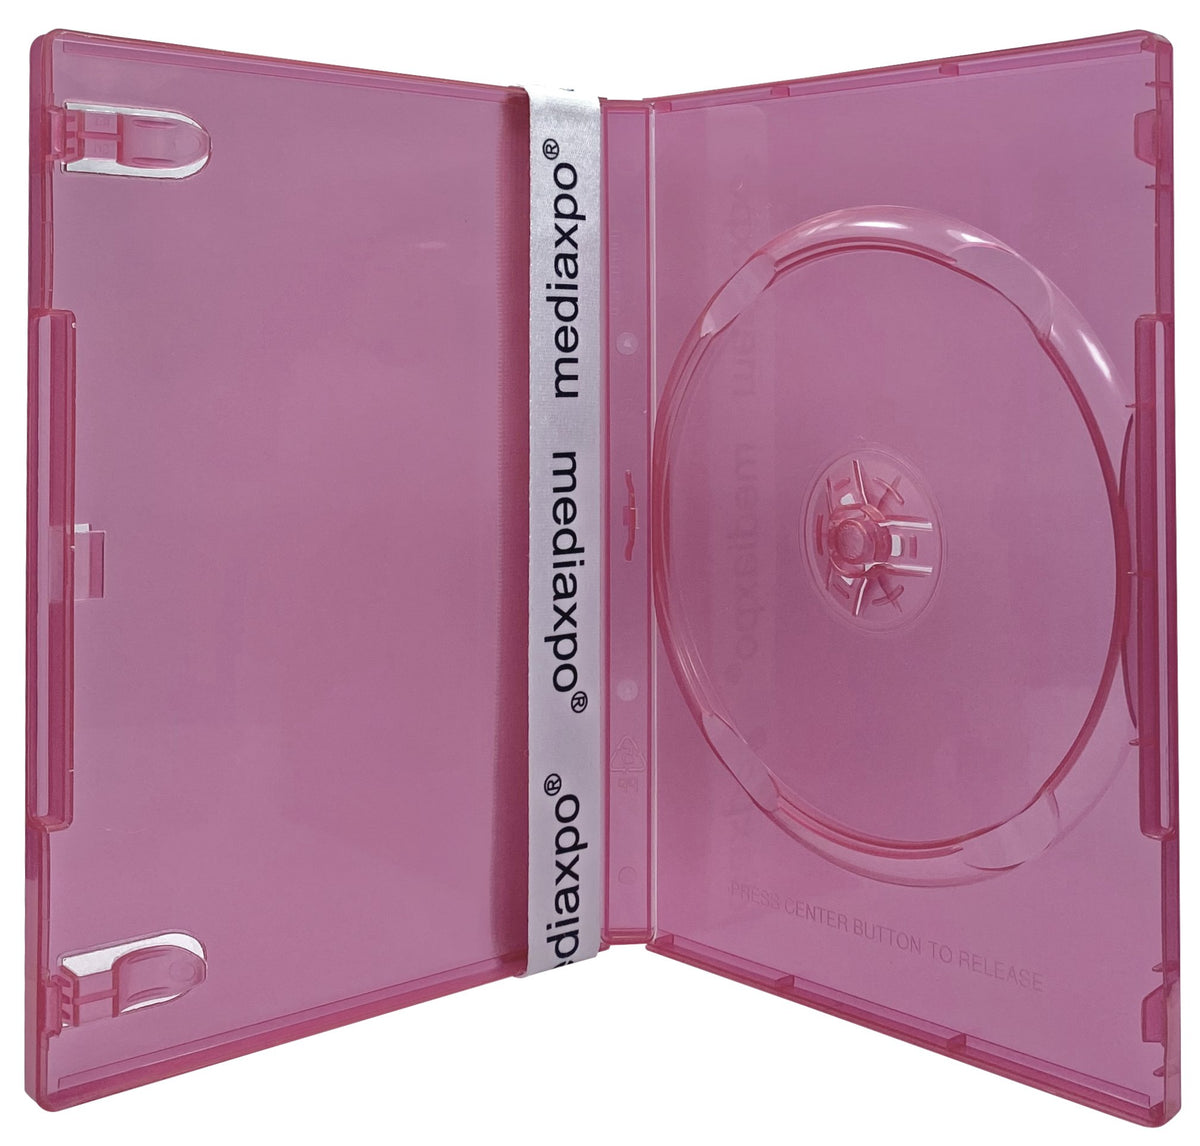 Mediaxpo CheckOutStore 2000pc. Mini DVD Cases – Sears Marketplace